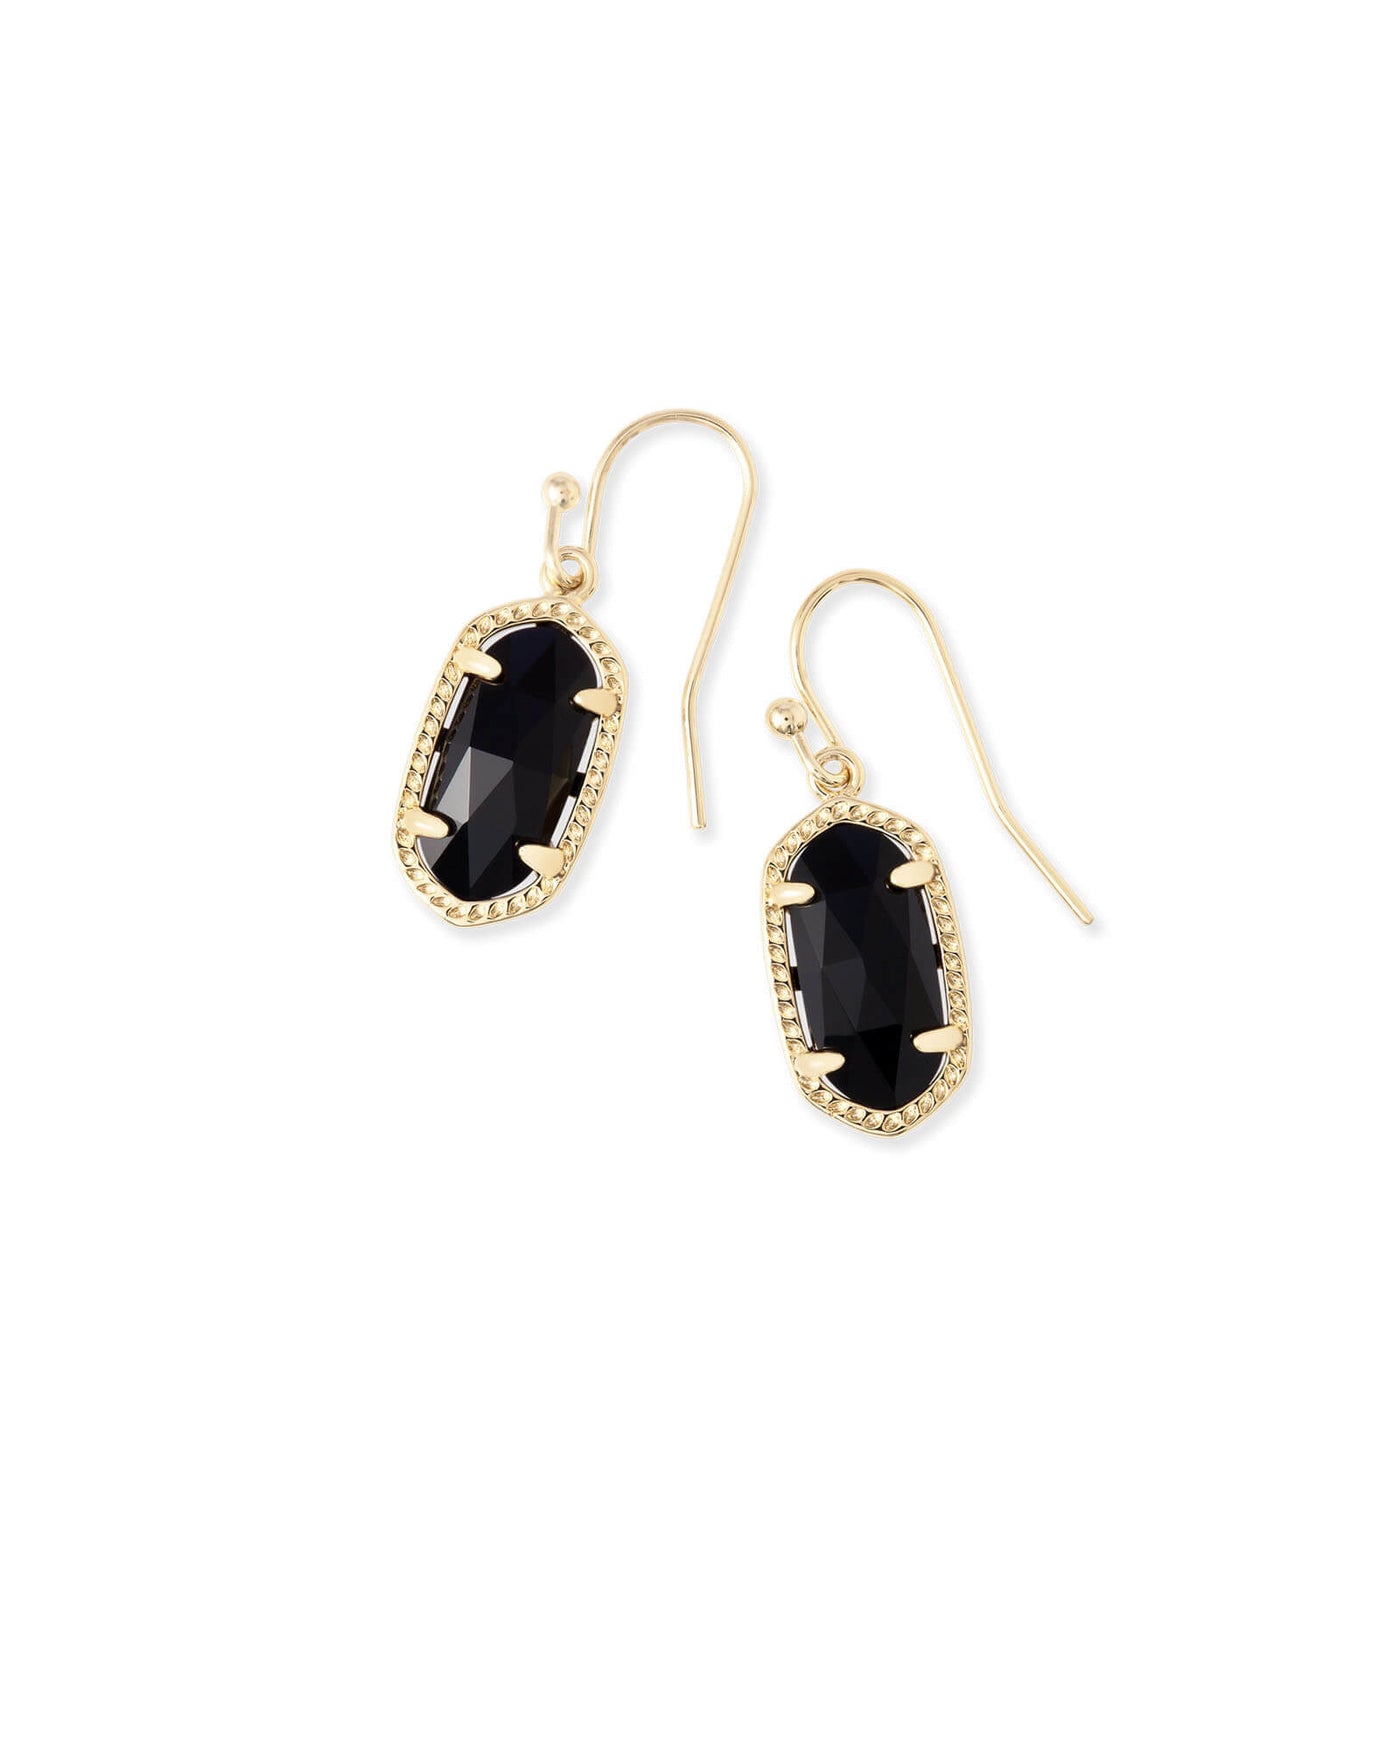 Lee Gold Drop Earrings in Black Opaque Glass | Kendra Scott